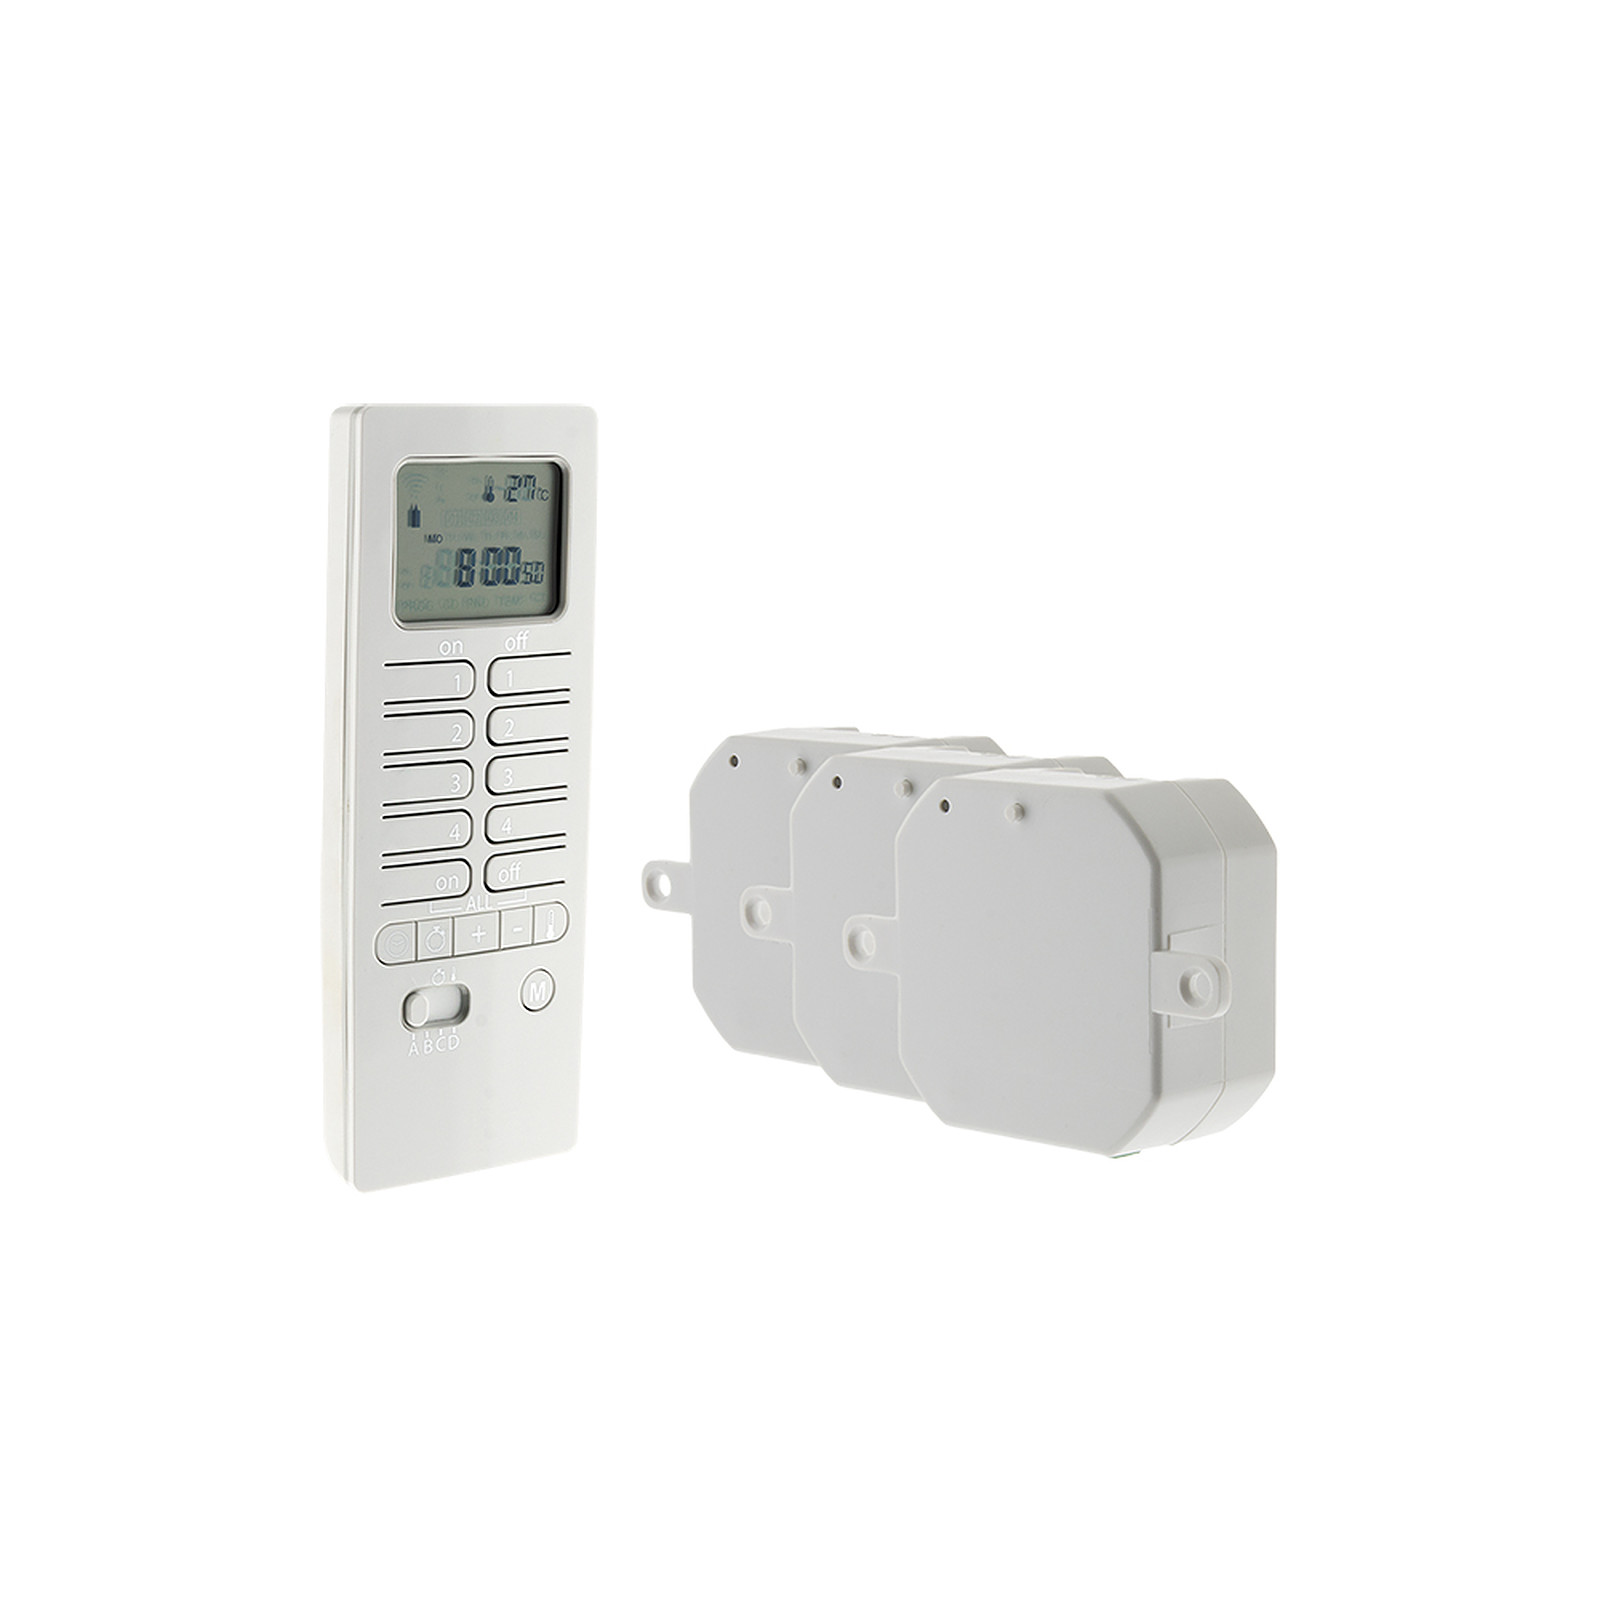 Otio Pack chauffage connecte avec telecommande thermostat et modules de chauffage - Thermostat connecte Otio